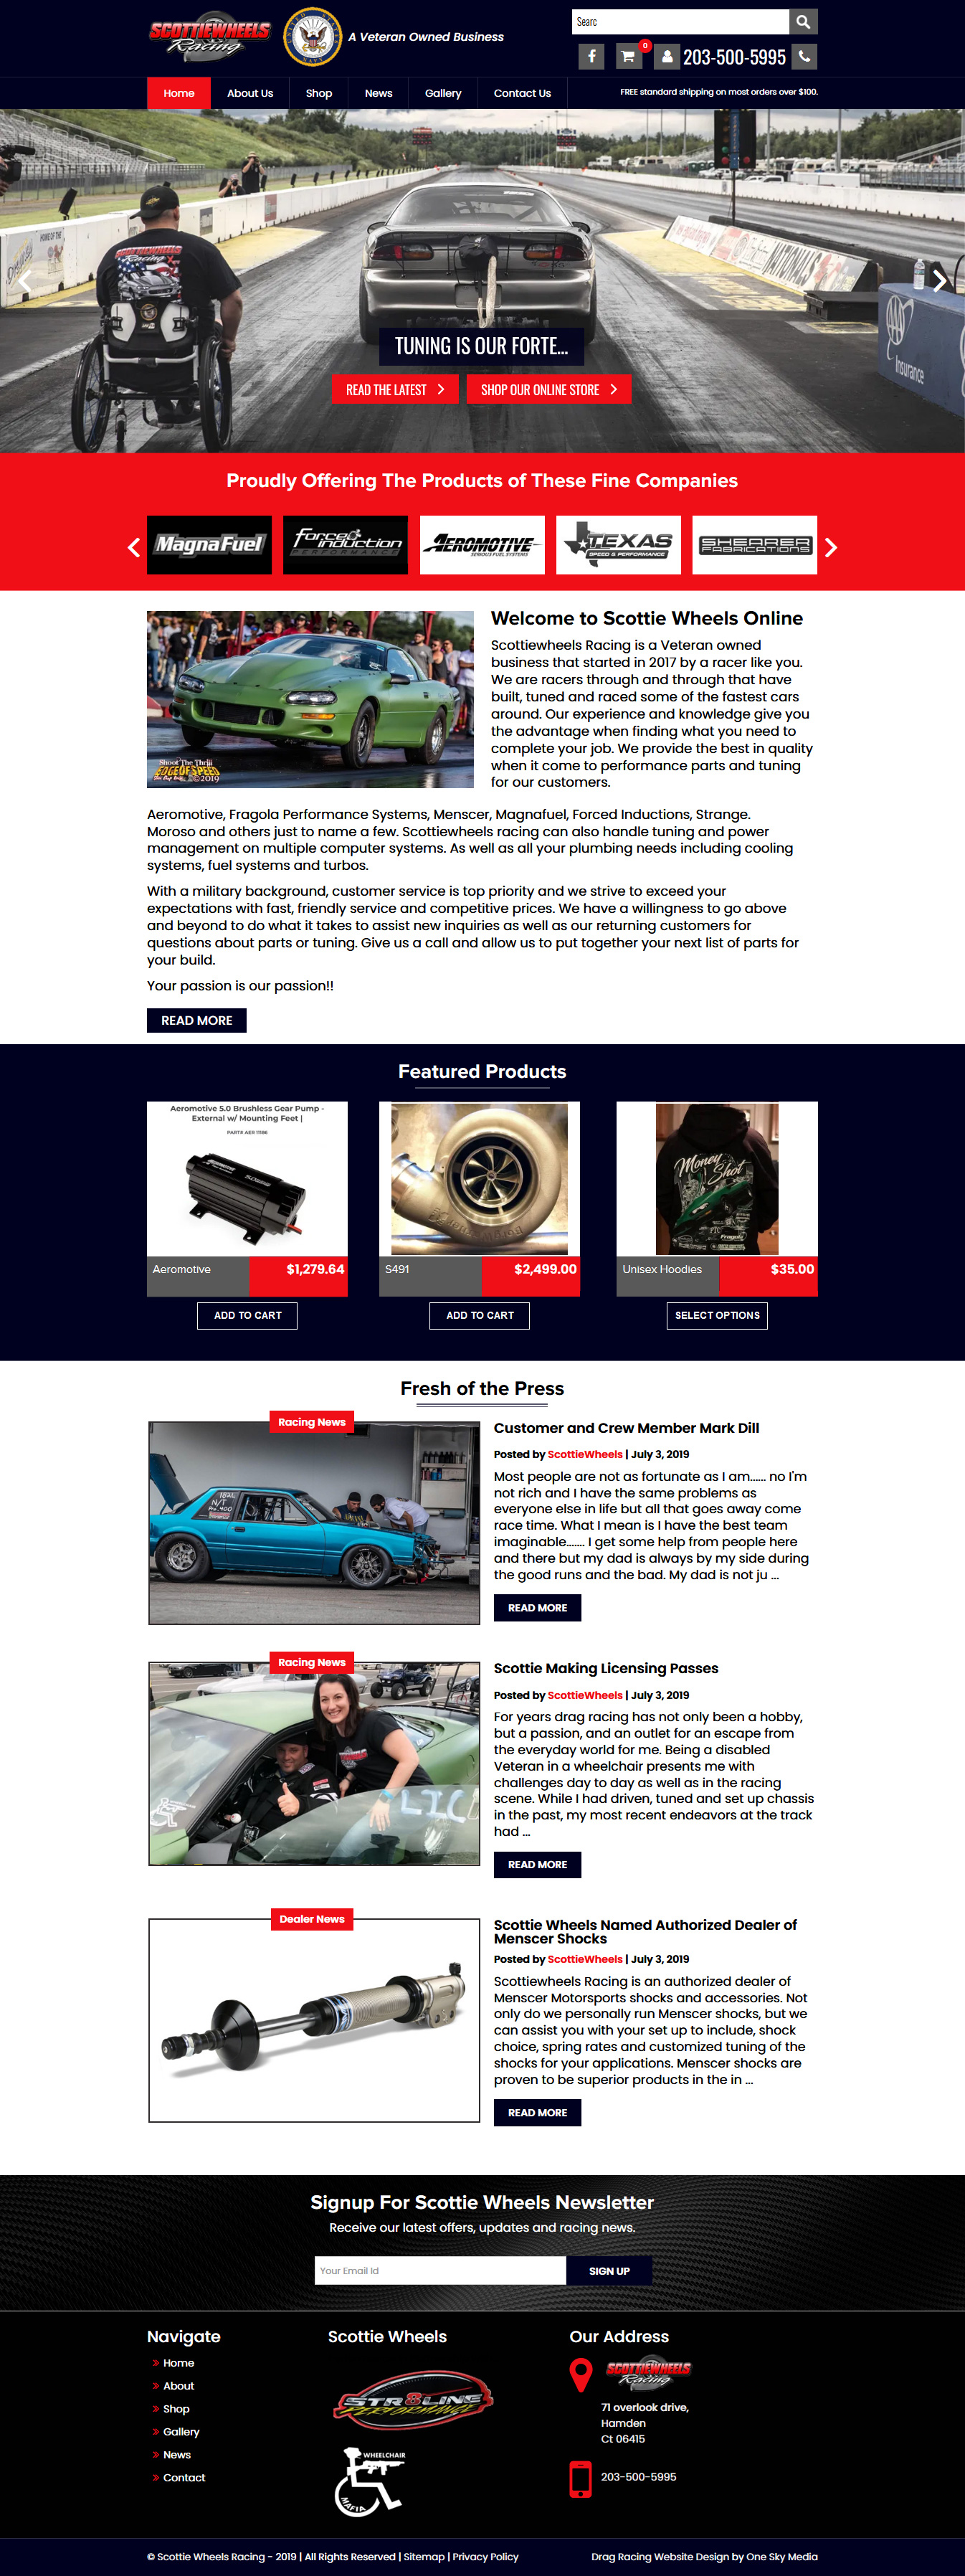 Scottie Wheels drag raging retailer website design 